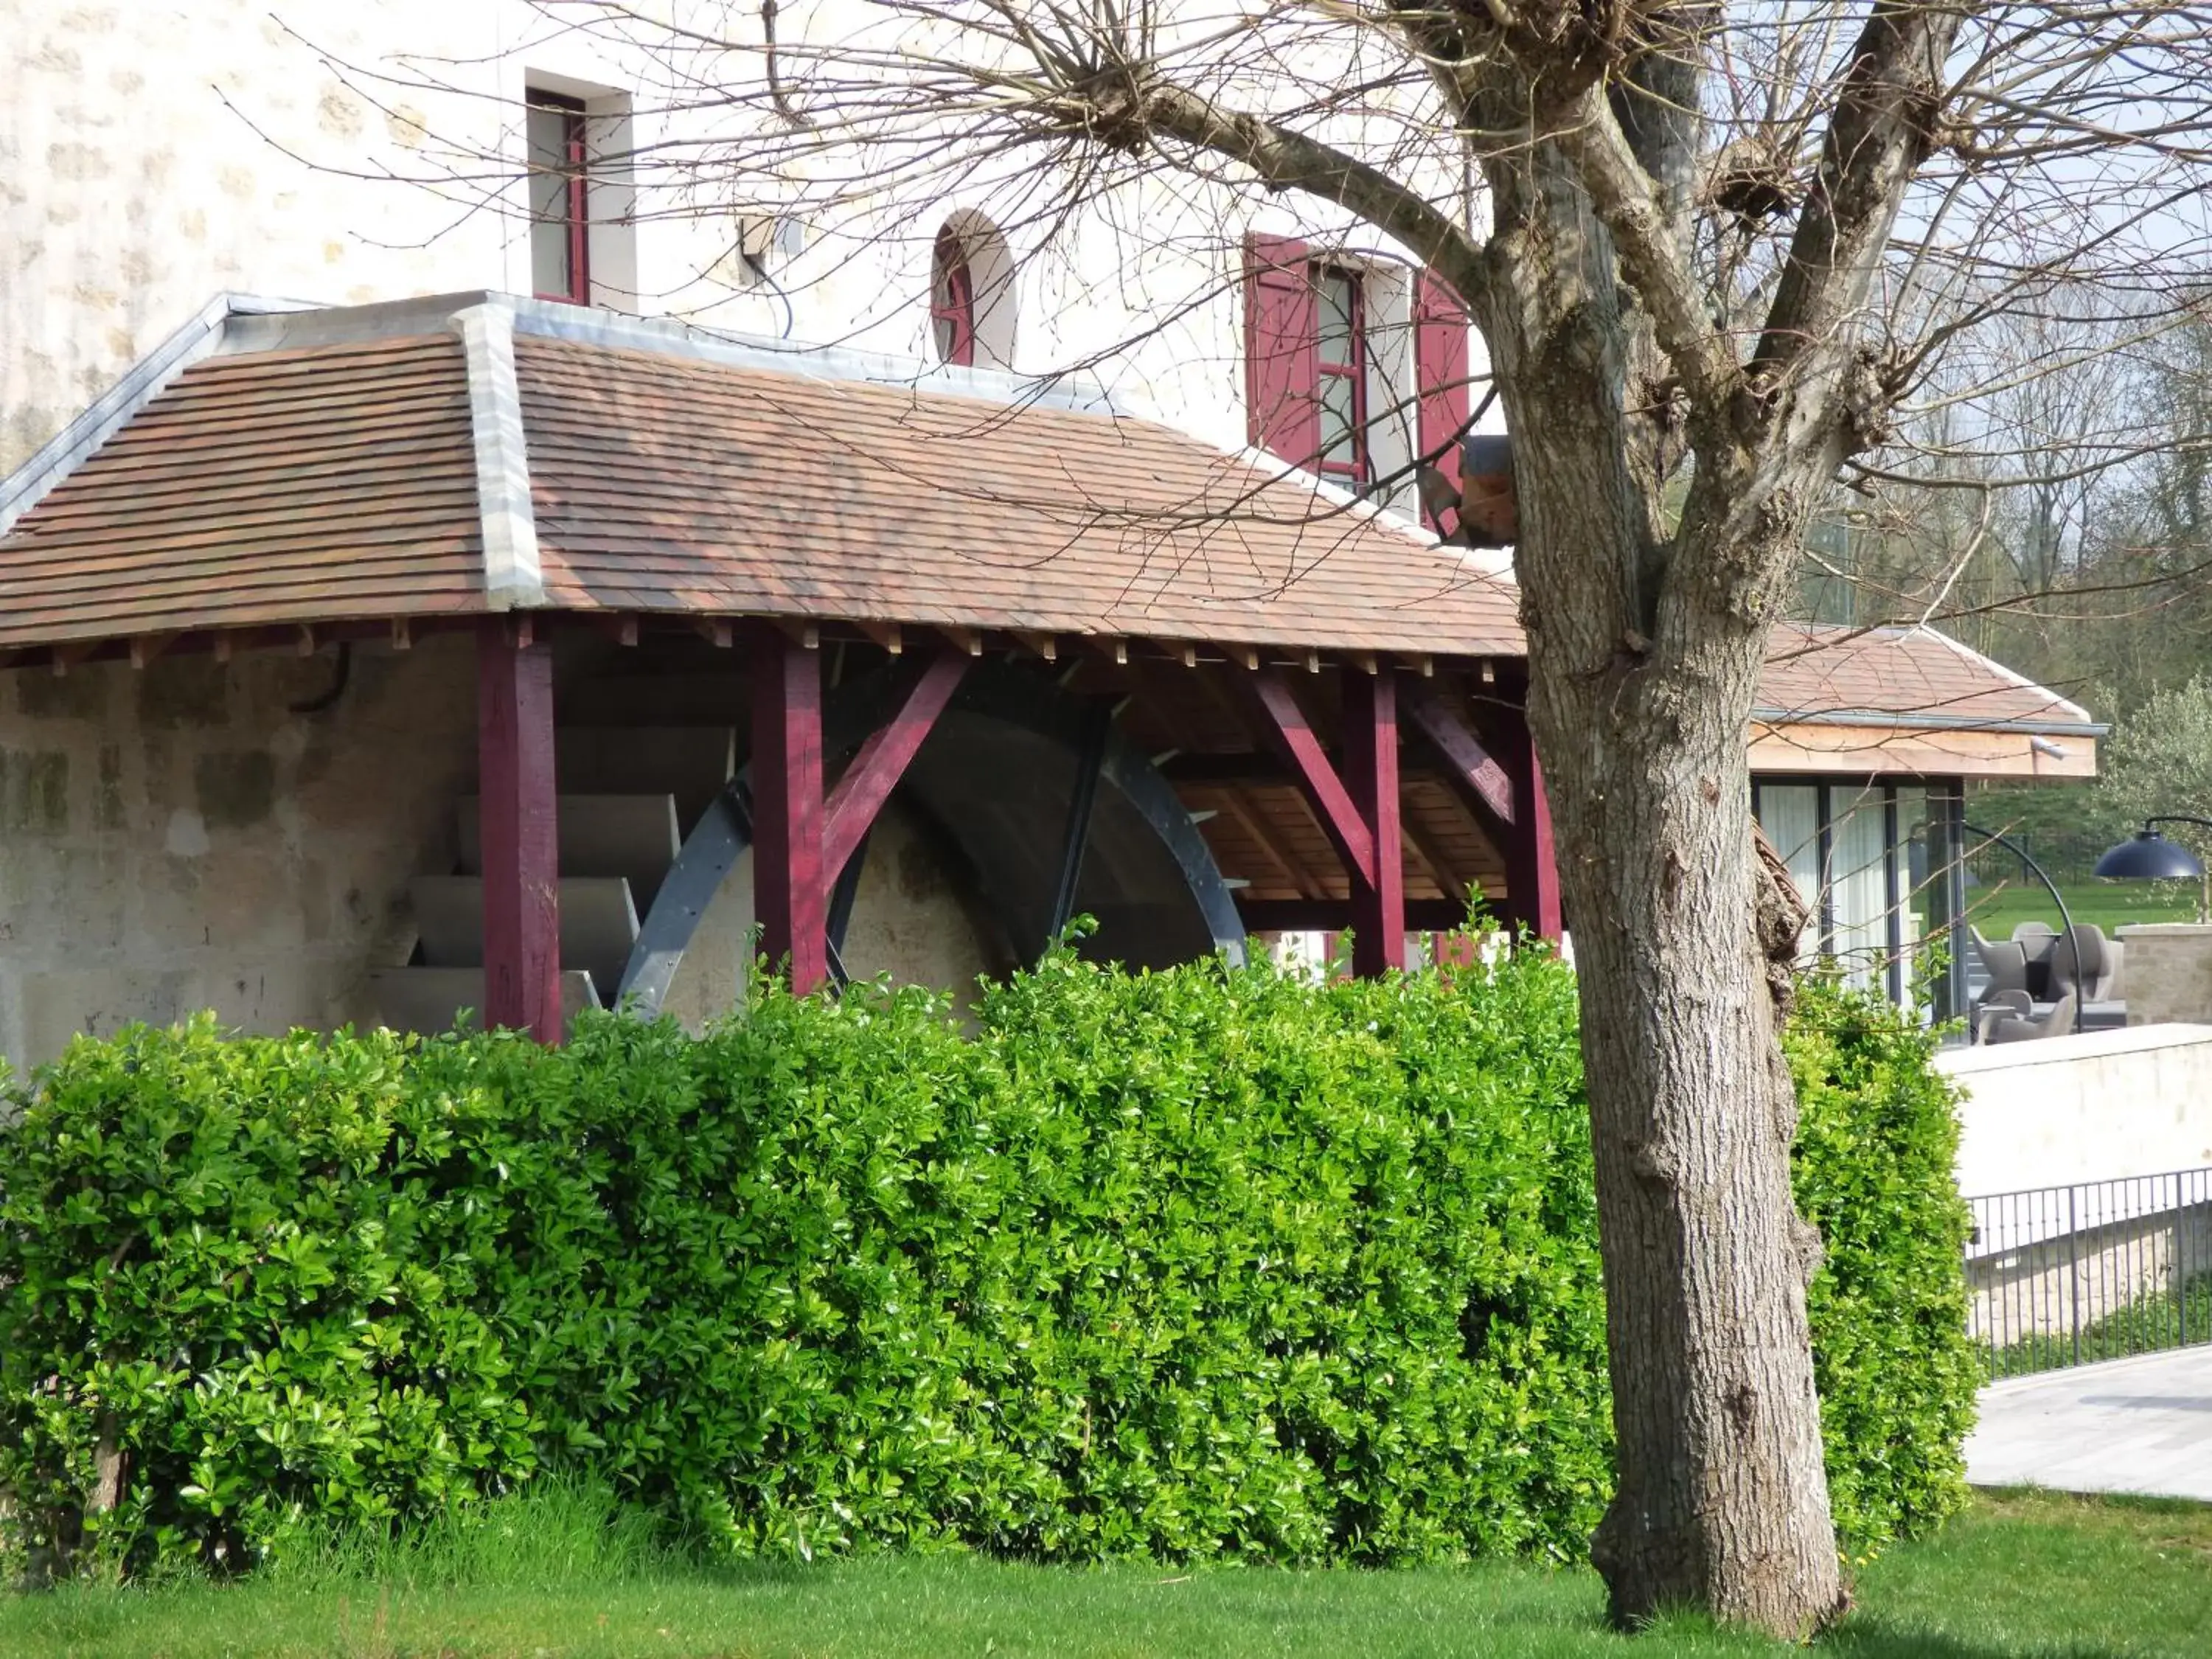 Property Building in Le Moulin des Marais